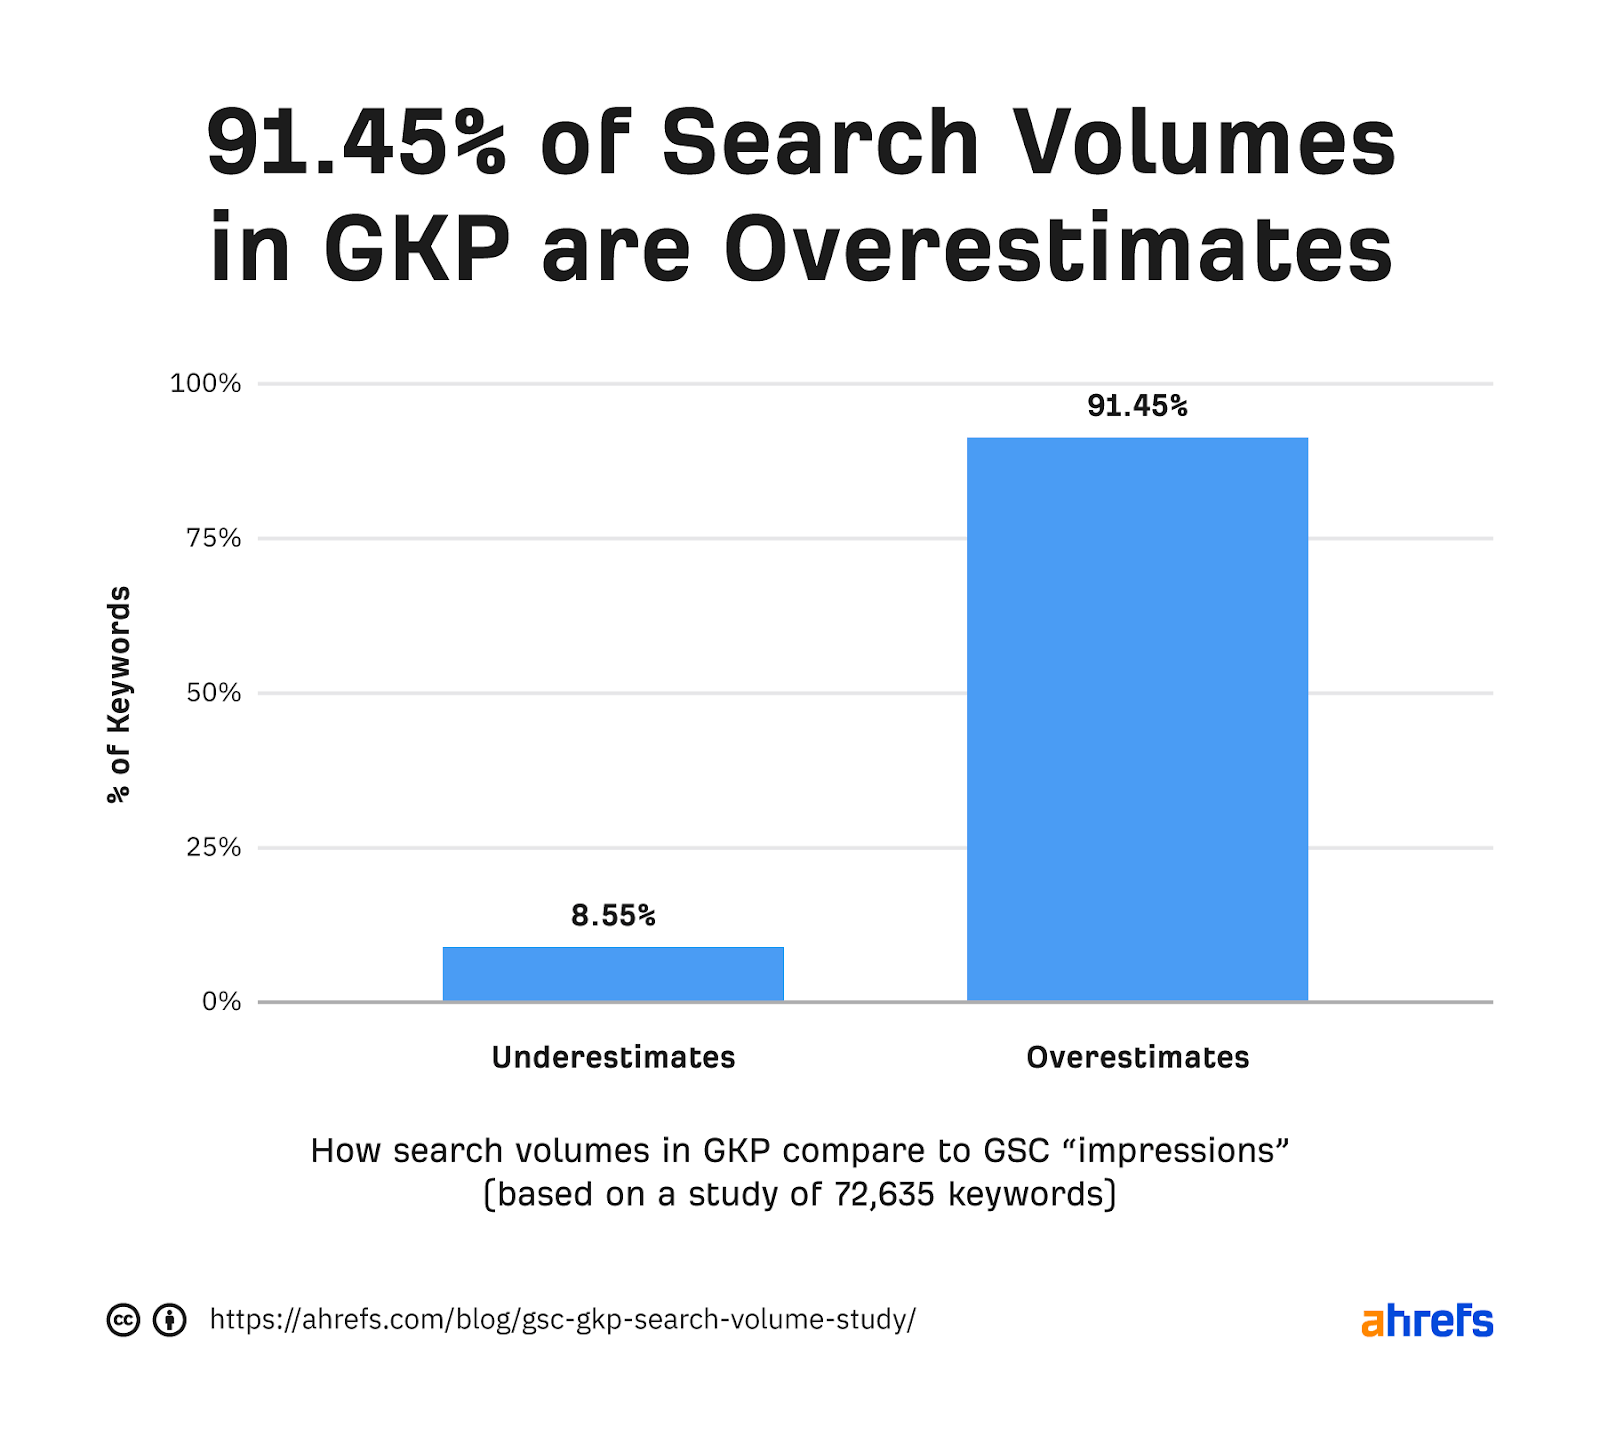 نمودار میله ای که 91.45٪ از حجم جستجو در GKP را نشان می دهد بیش از حد برآورد شده است 